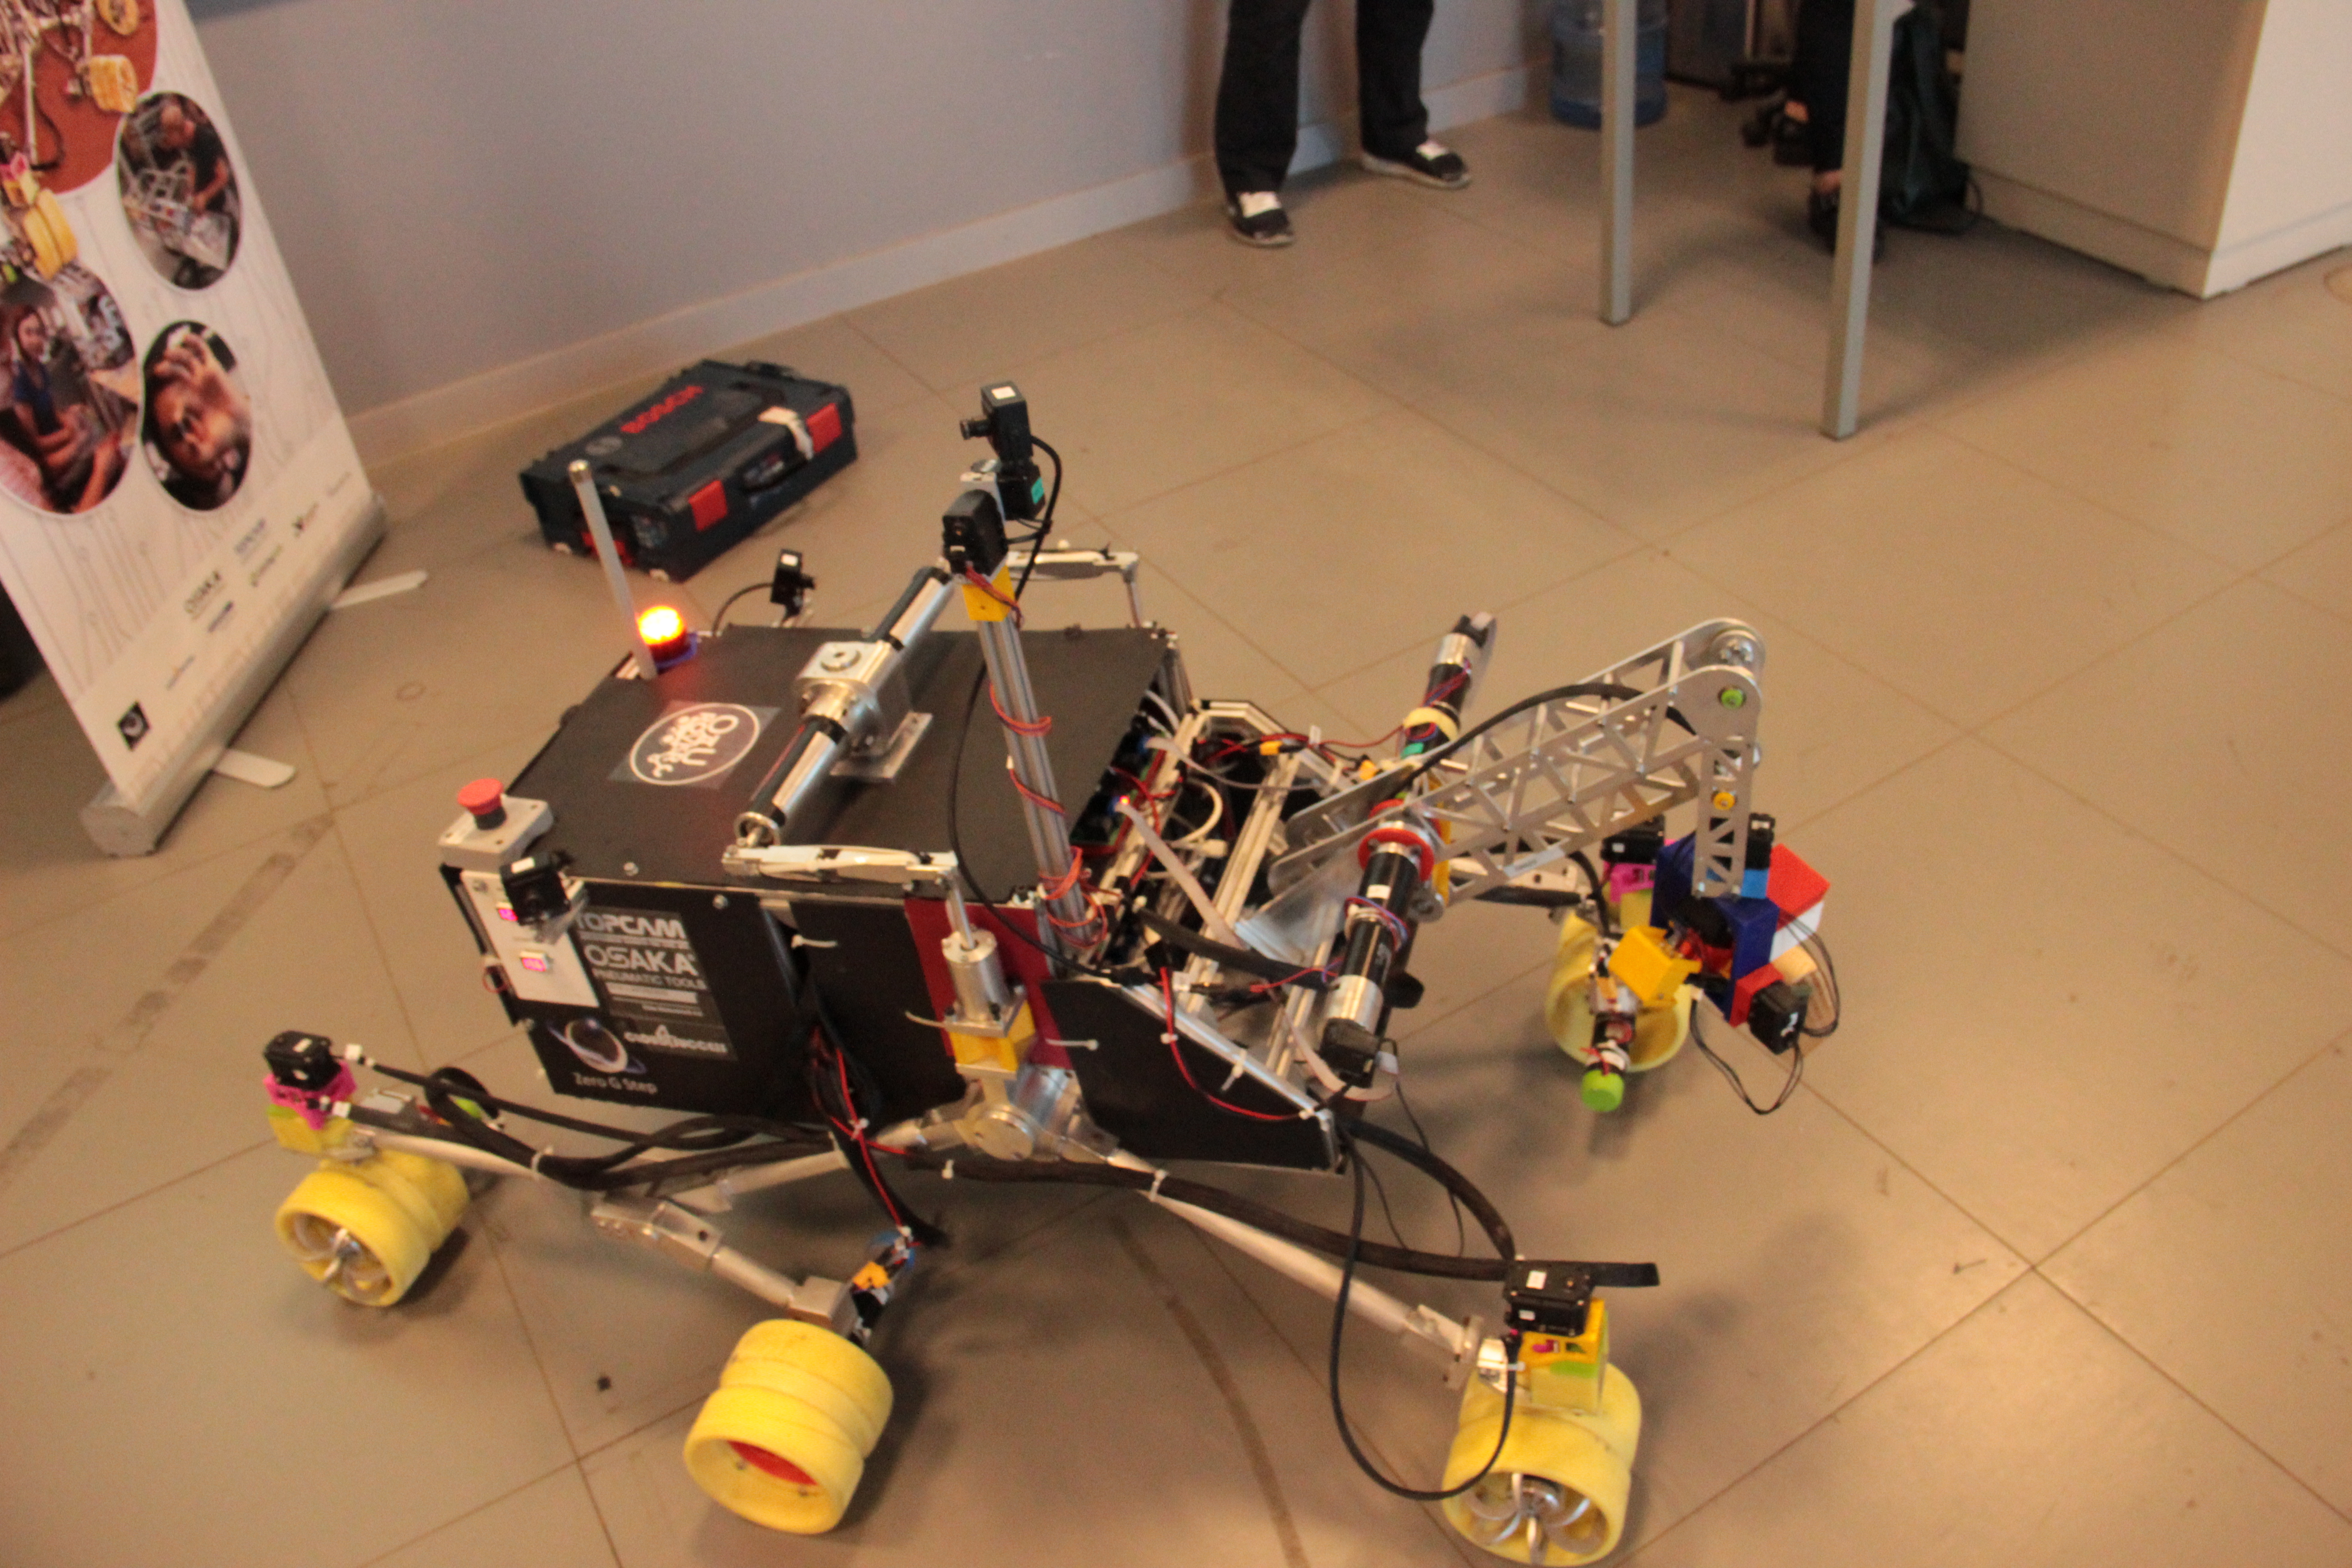 Özyeğin Üniversitesi öğrencilerinin tasarladığı mars robotu ikinci kez Türkiye’den katılan tek takım olarak Polonya’da yarışacak-1144